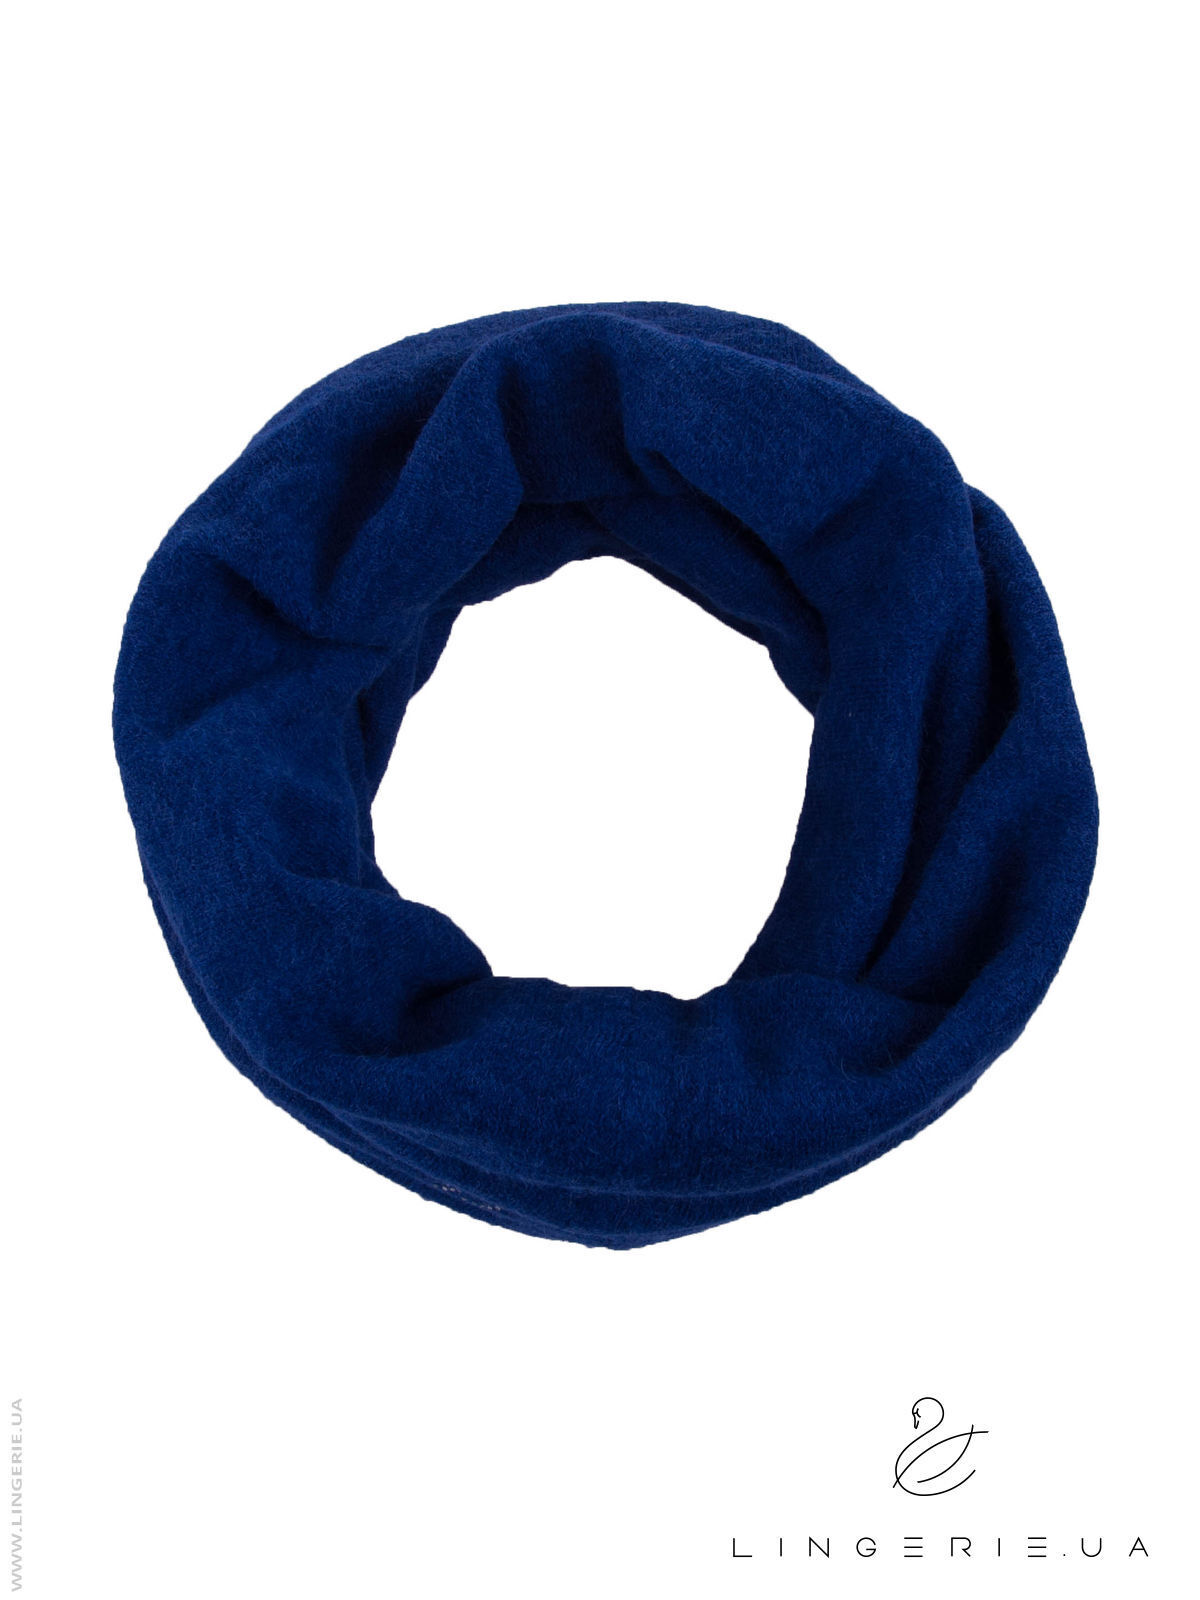 Купить Ангоровый шарф снуд LINGERIE 170142  в Украина в Одежда для дома и отдыха - уют в магазине Lingerie.ua